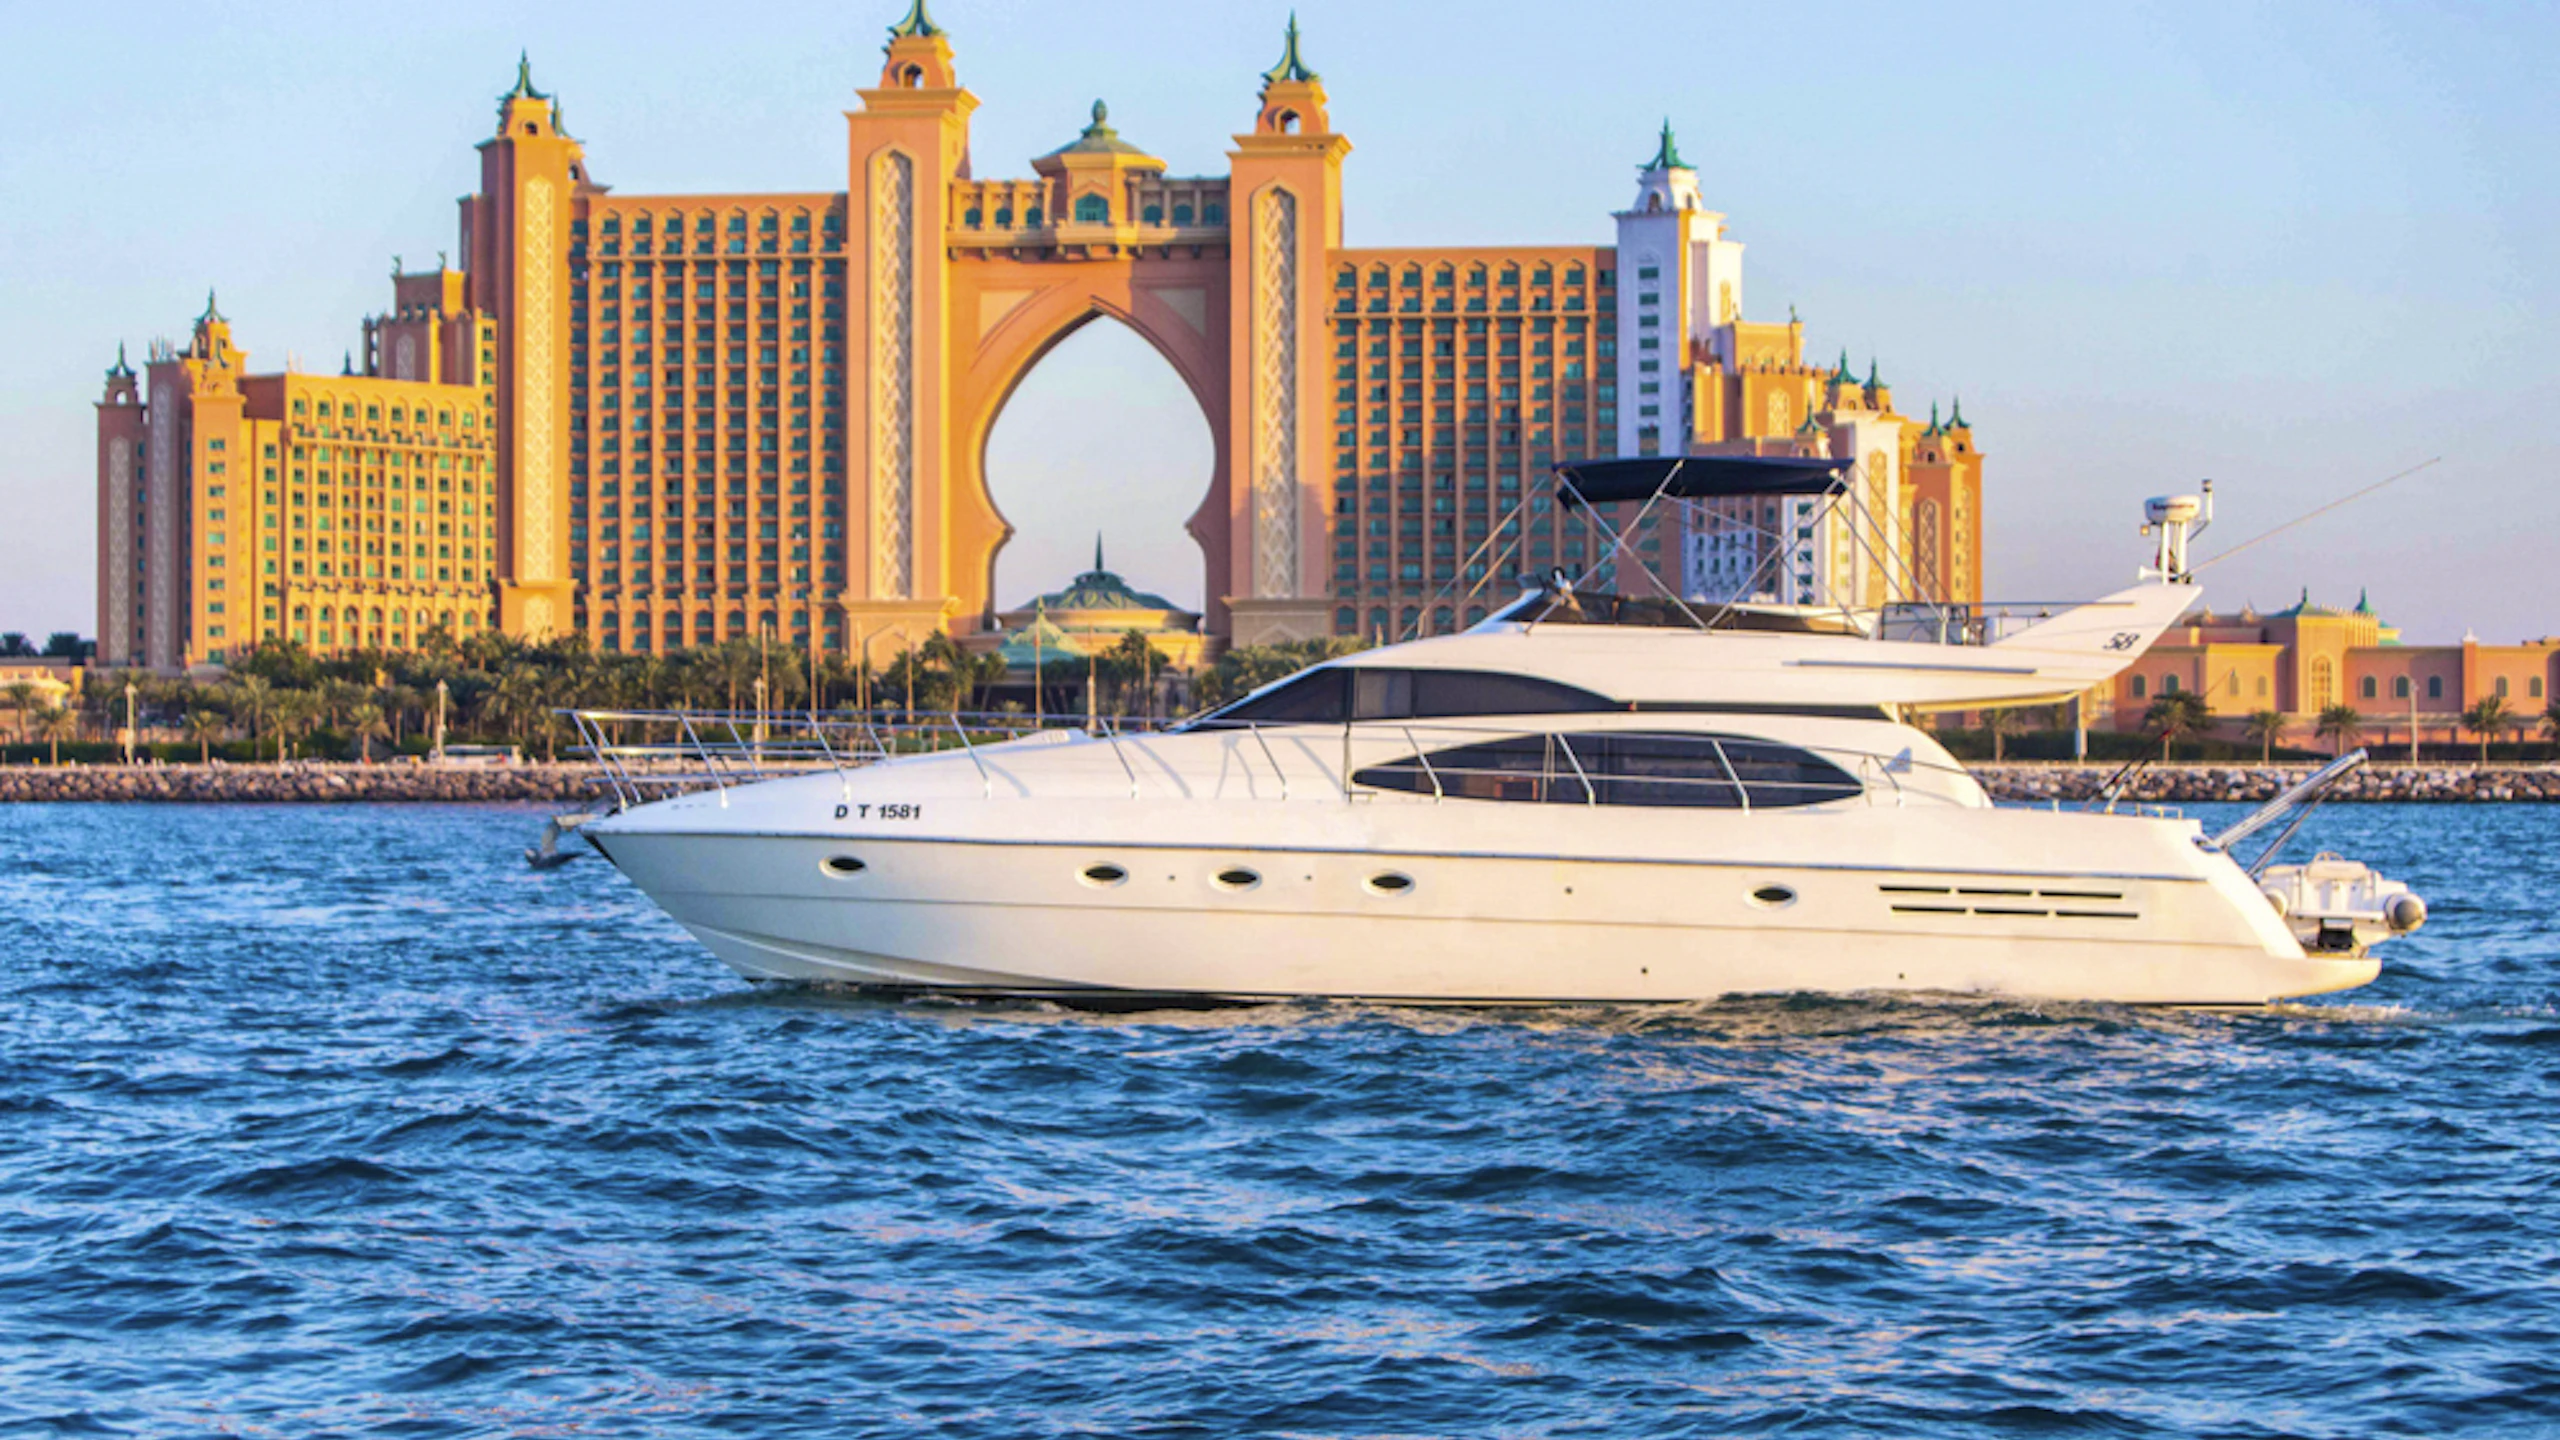 Dubai Marina Boat Ride - Thunder Boat Ticket